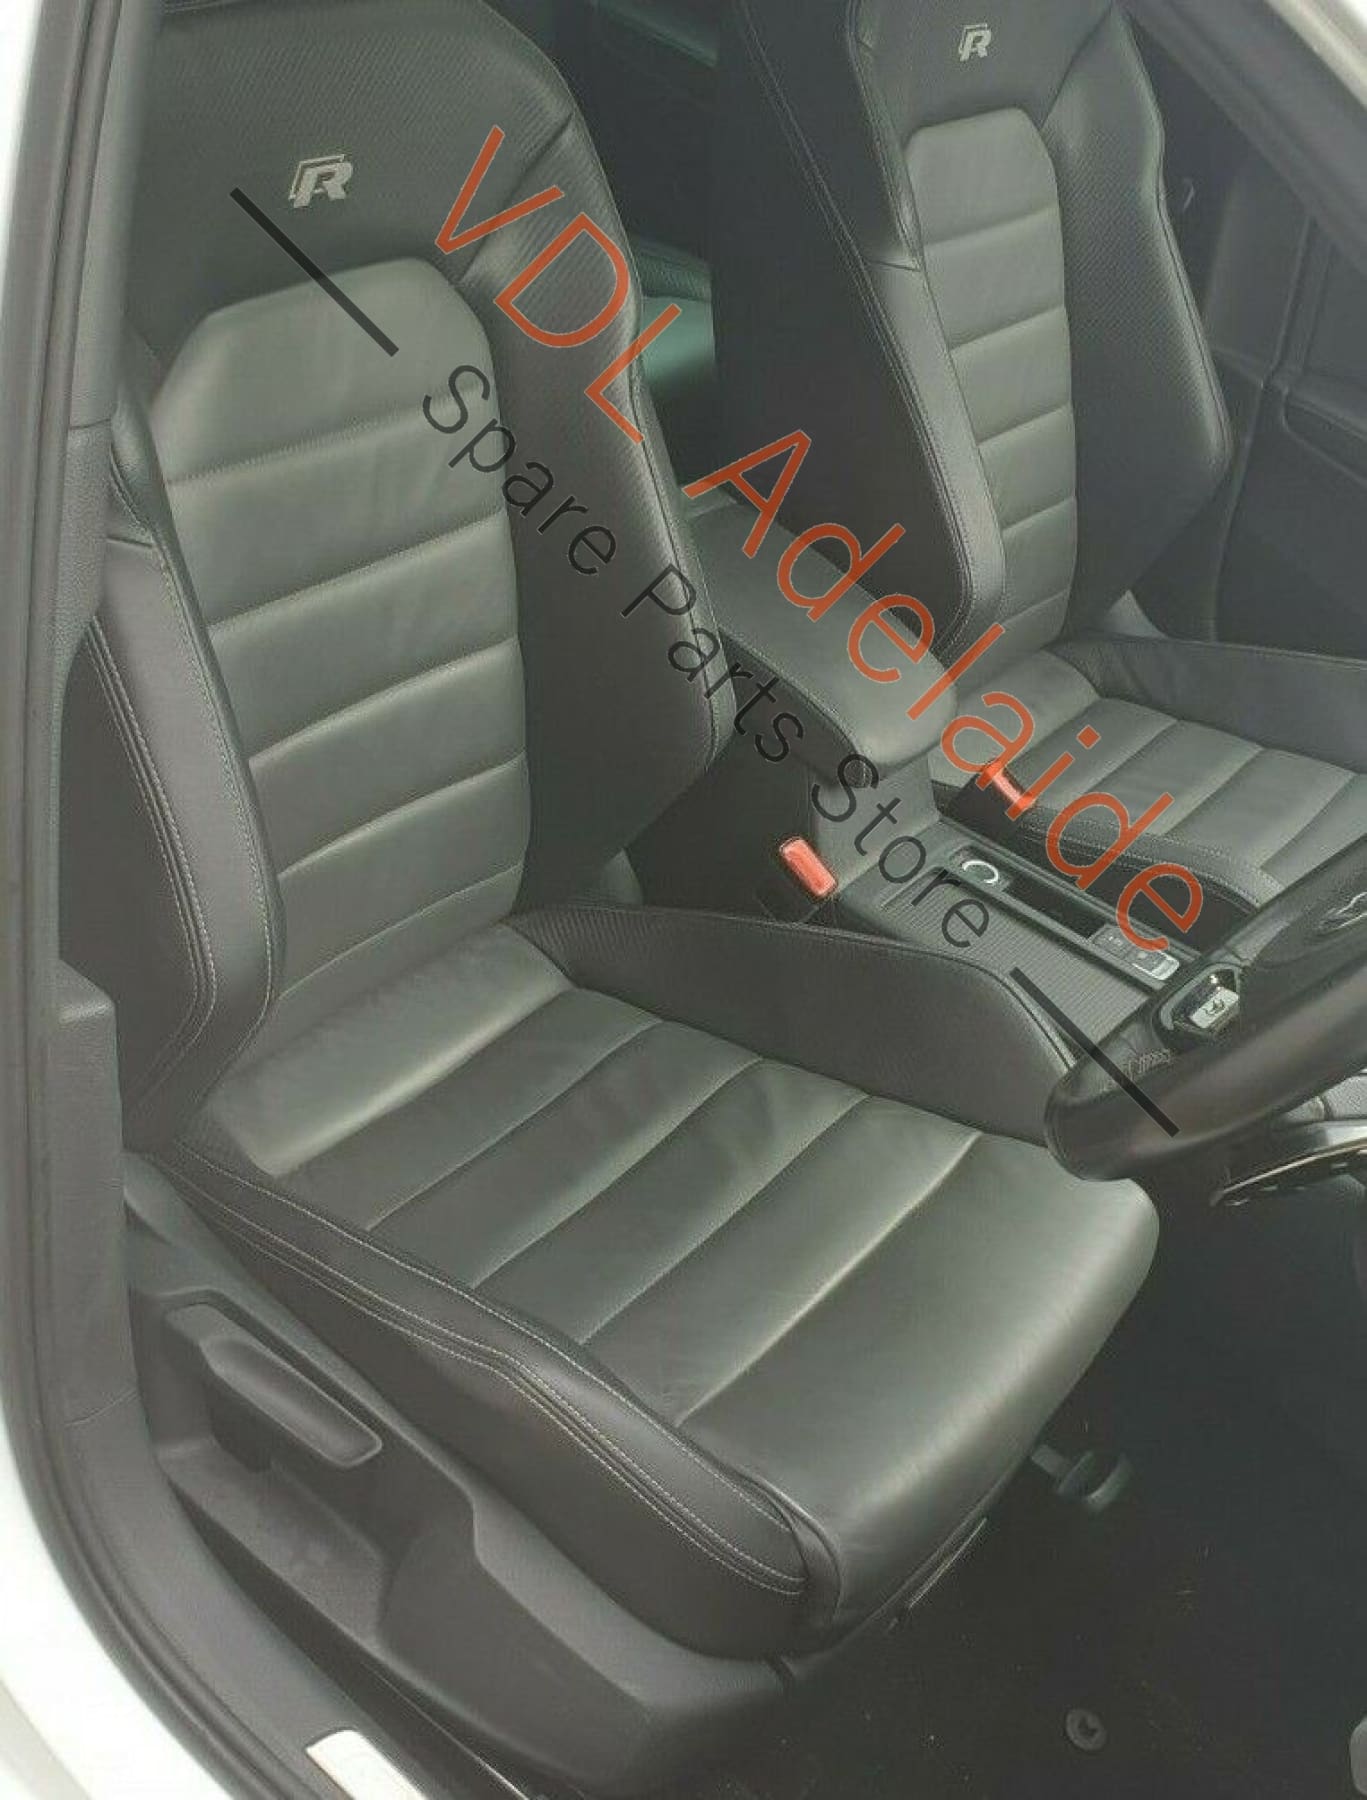 VW Golf MK7 Genuine OEM PDC Park Assist Parking Sensor 5Q0919275B L0K1 0R0R 5Q0919275B